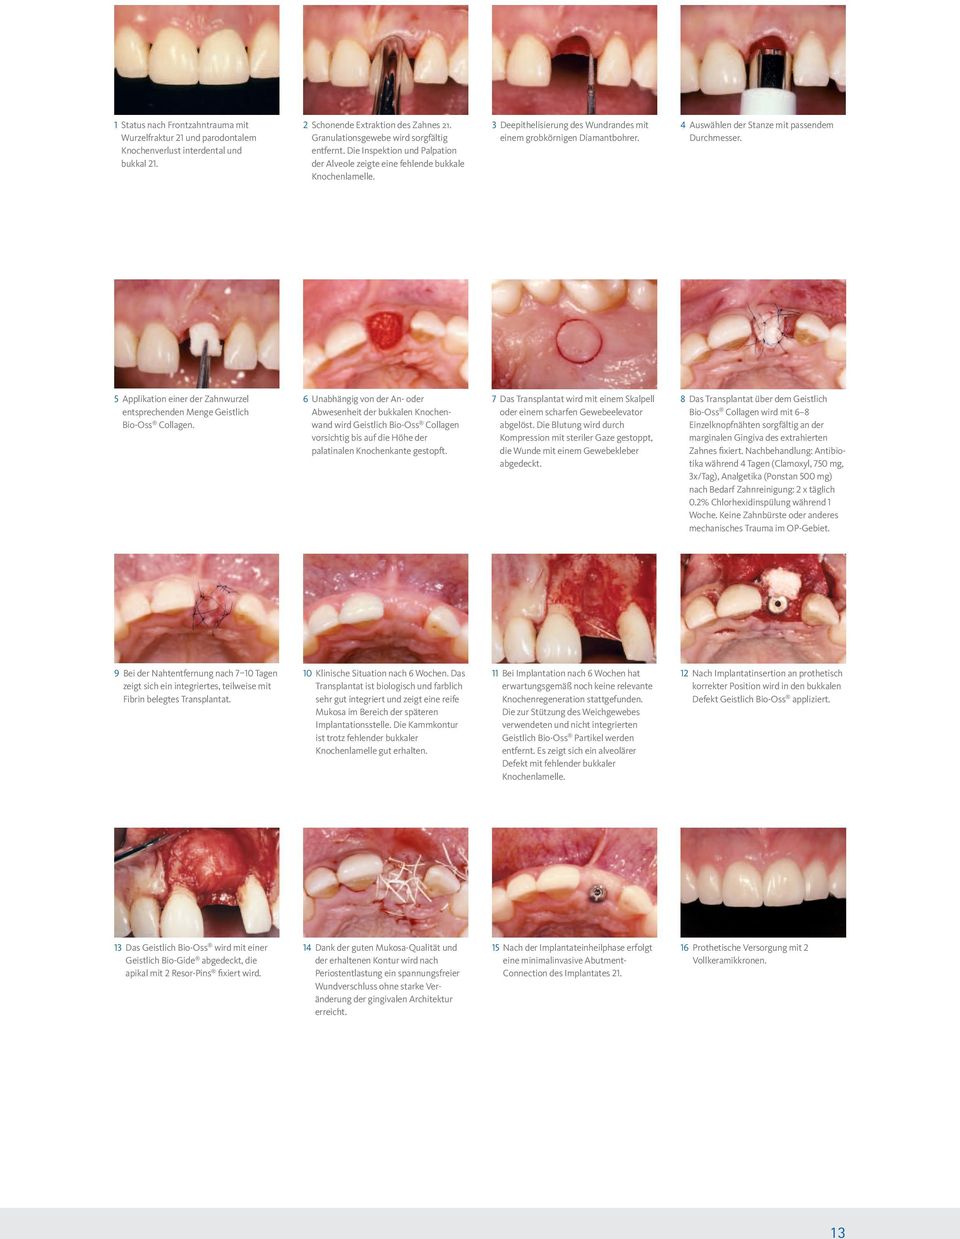 4 Auswählen der Stanze mit passendem Durchmesser. 5 Applikation einer der Zahnwurzel entsprechenden Menge Geistlich Bio-Oss Collagen.